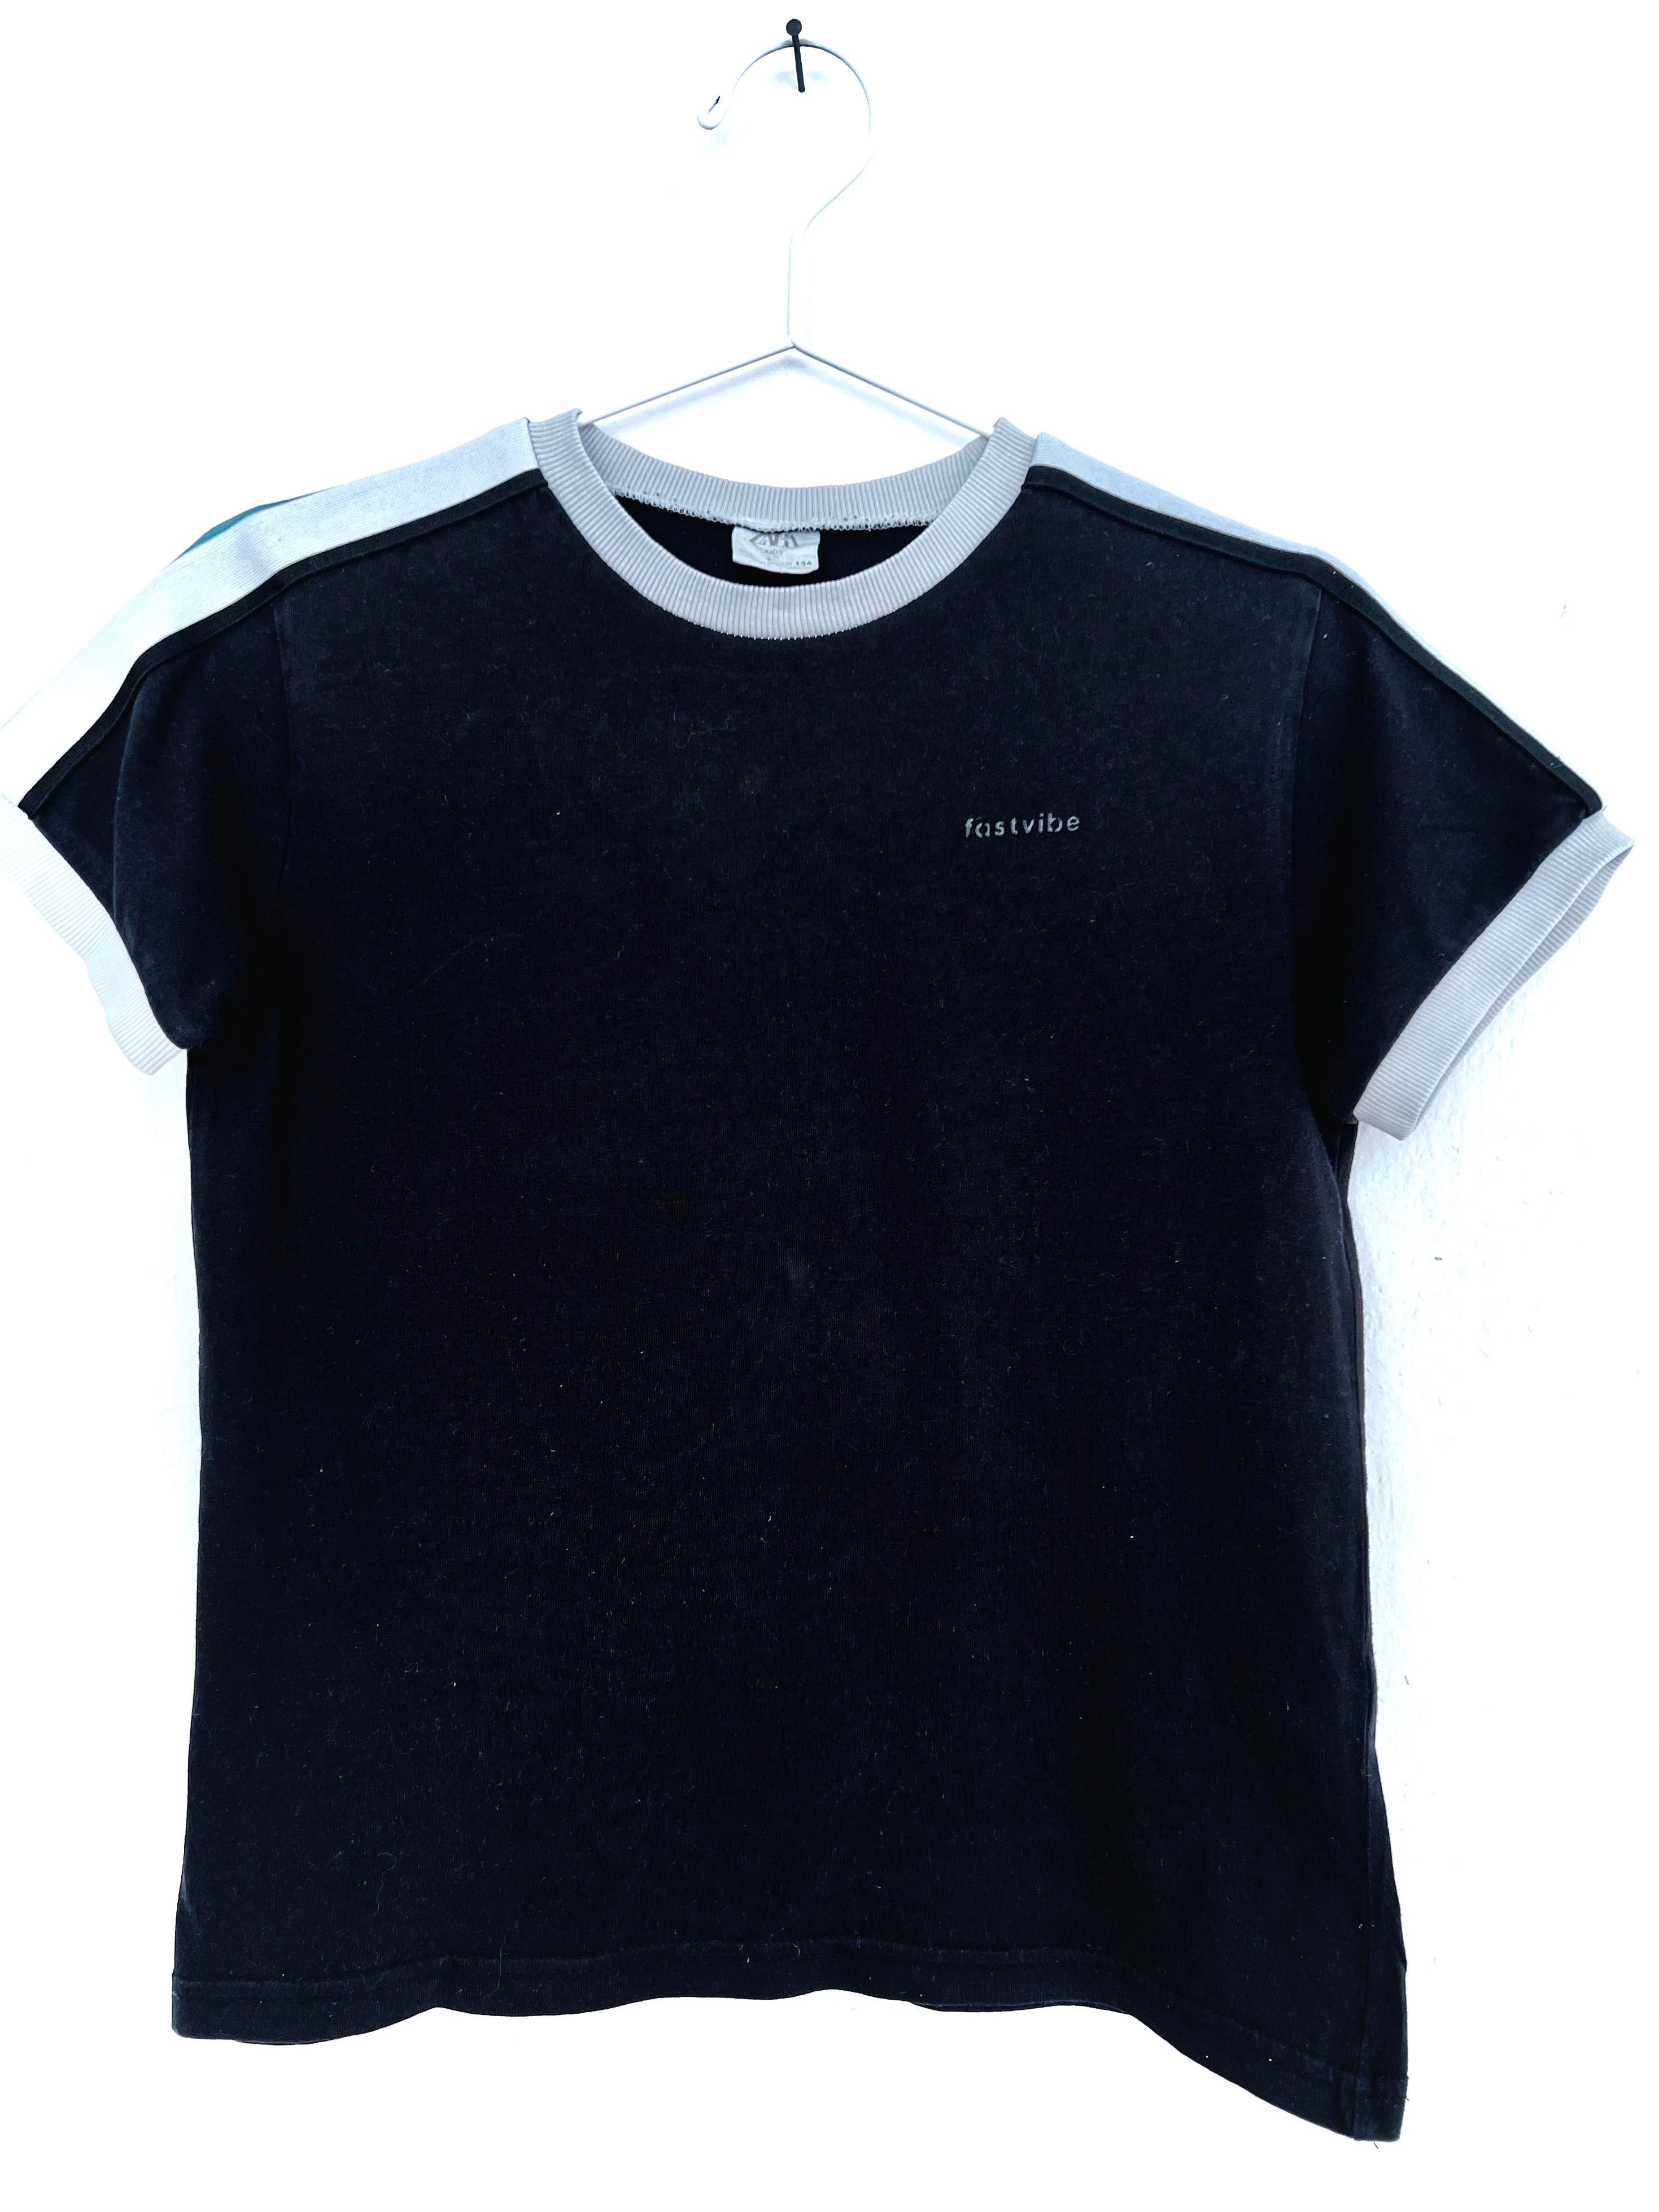 Chłopięcy t-shirt firmy Zara rozmiar 134 cm